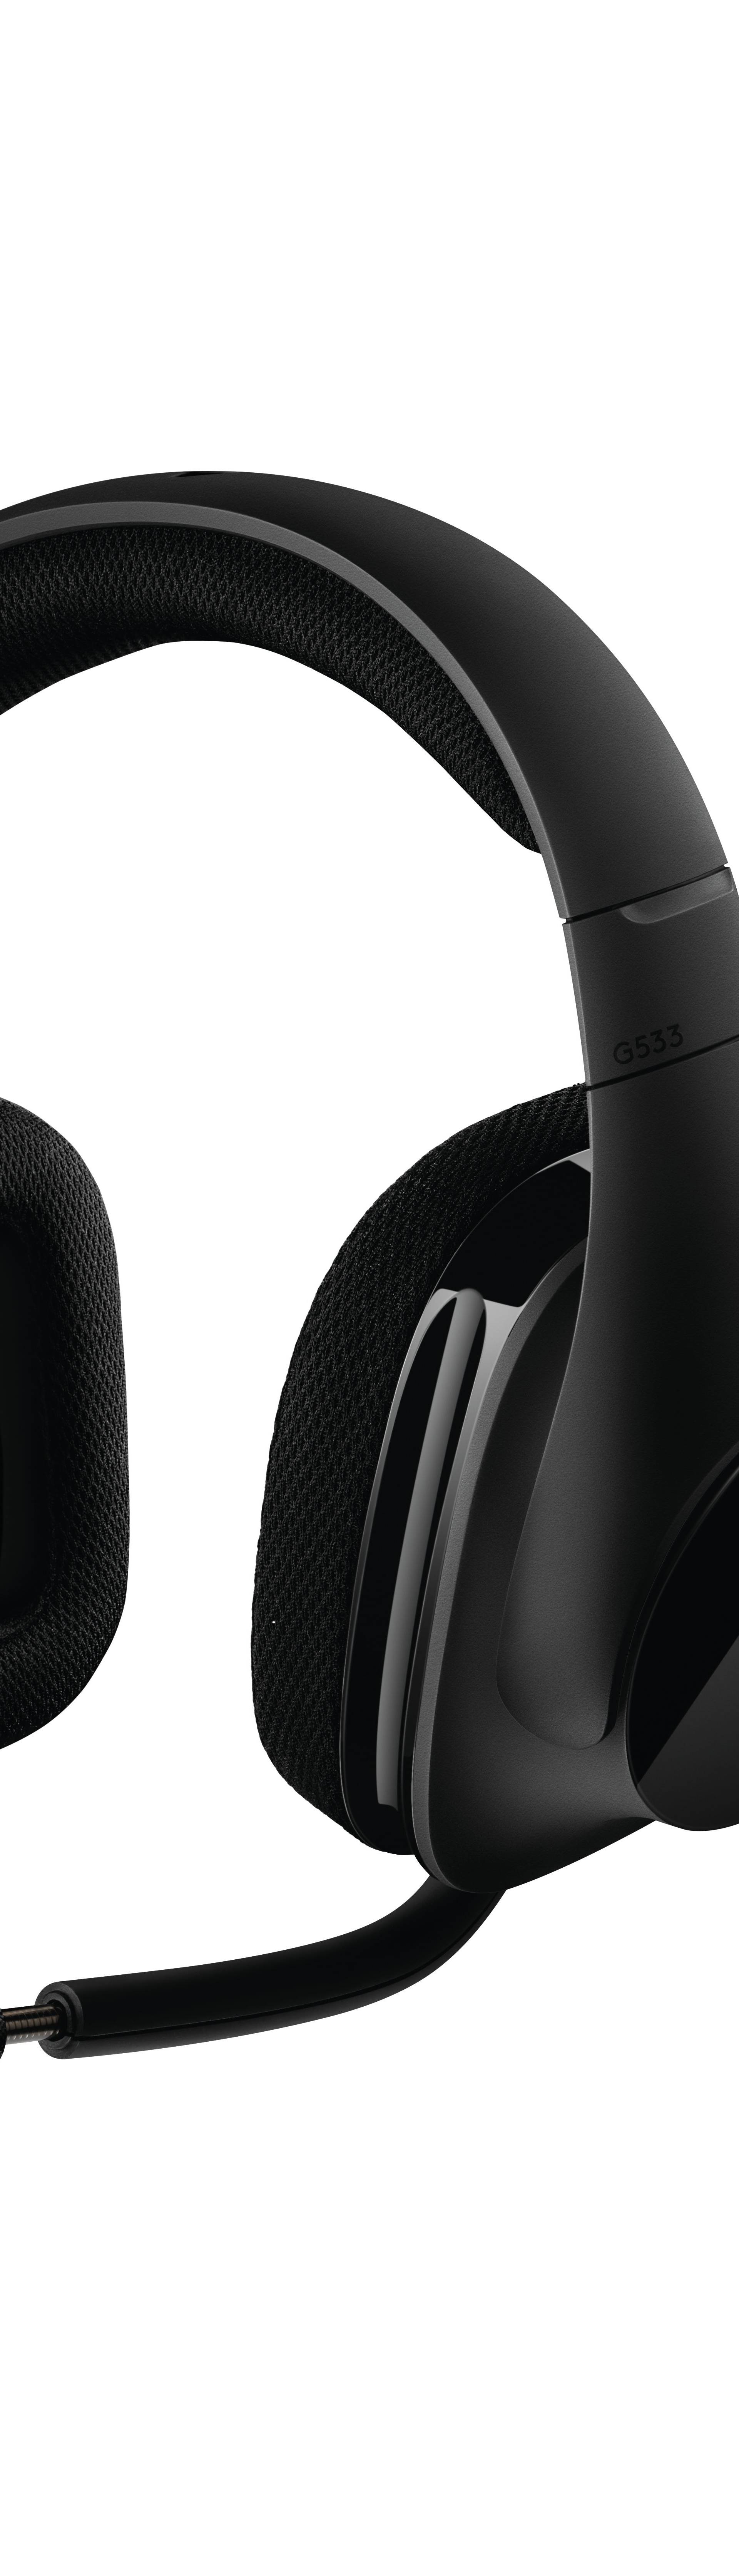 Logitech G533 slušalice nude vrhunski bežični zvuk za igrače